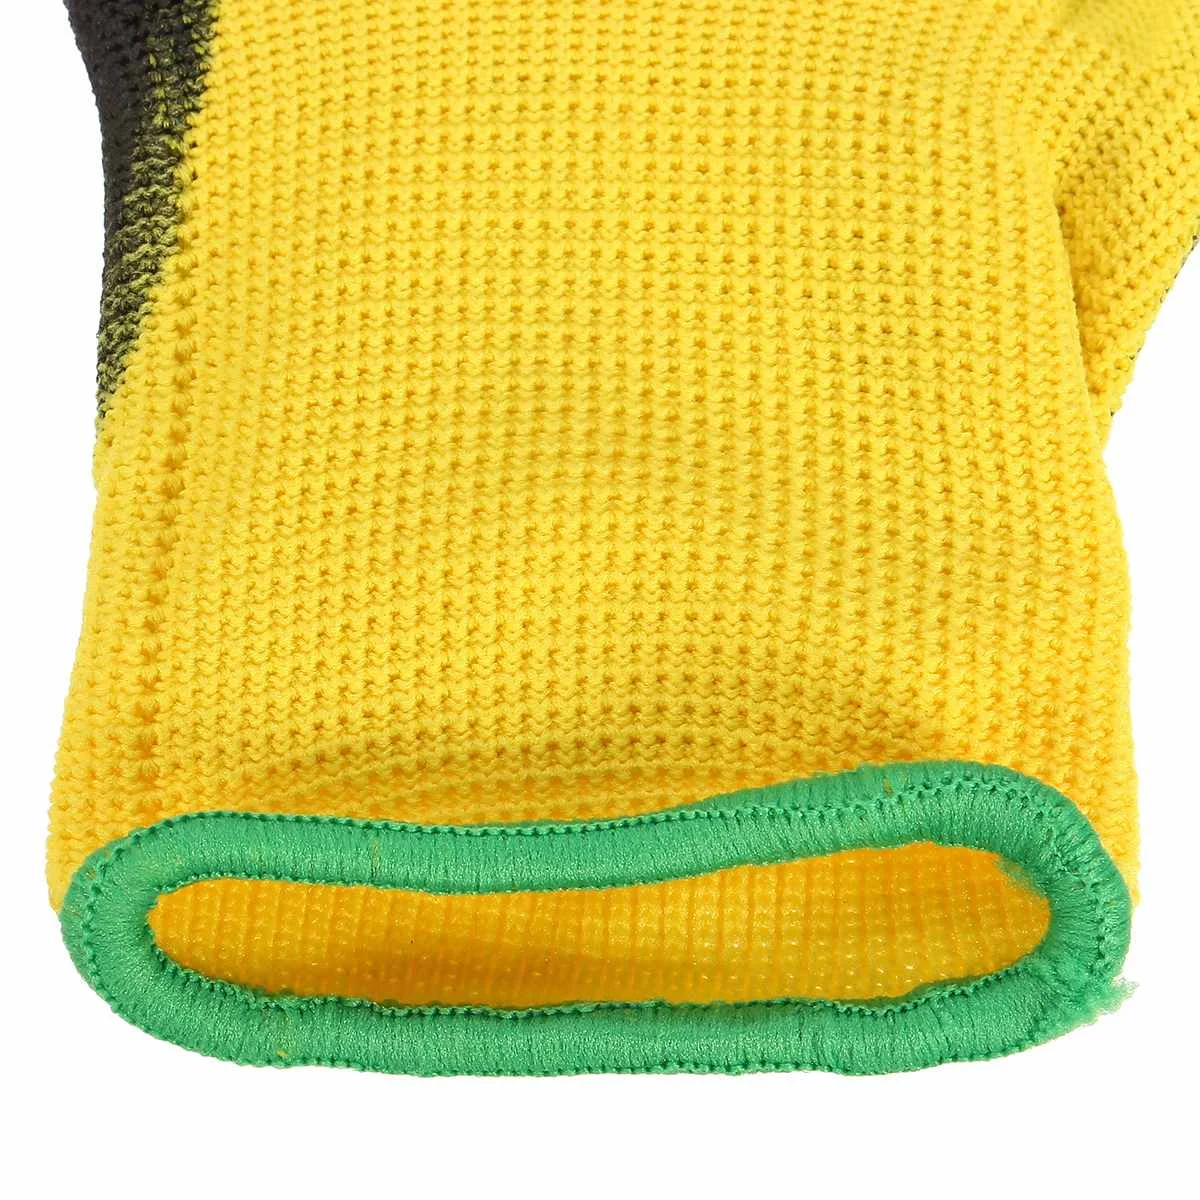 Новые Safurance 12 пар ПУ нитриловые защитные рабочие перчатки садовые строительные рукавицы с захватом Размер M/L/XL защита рук